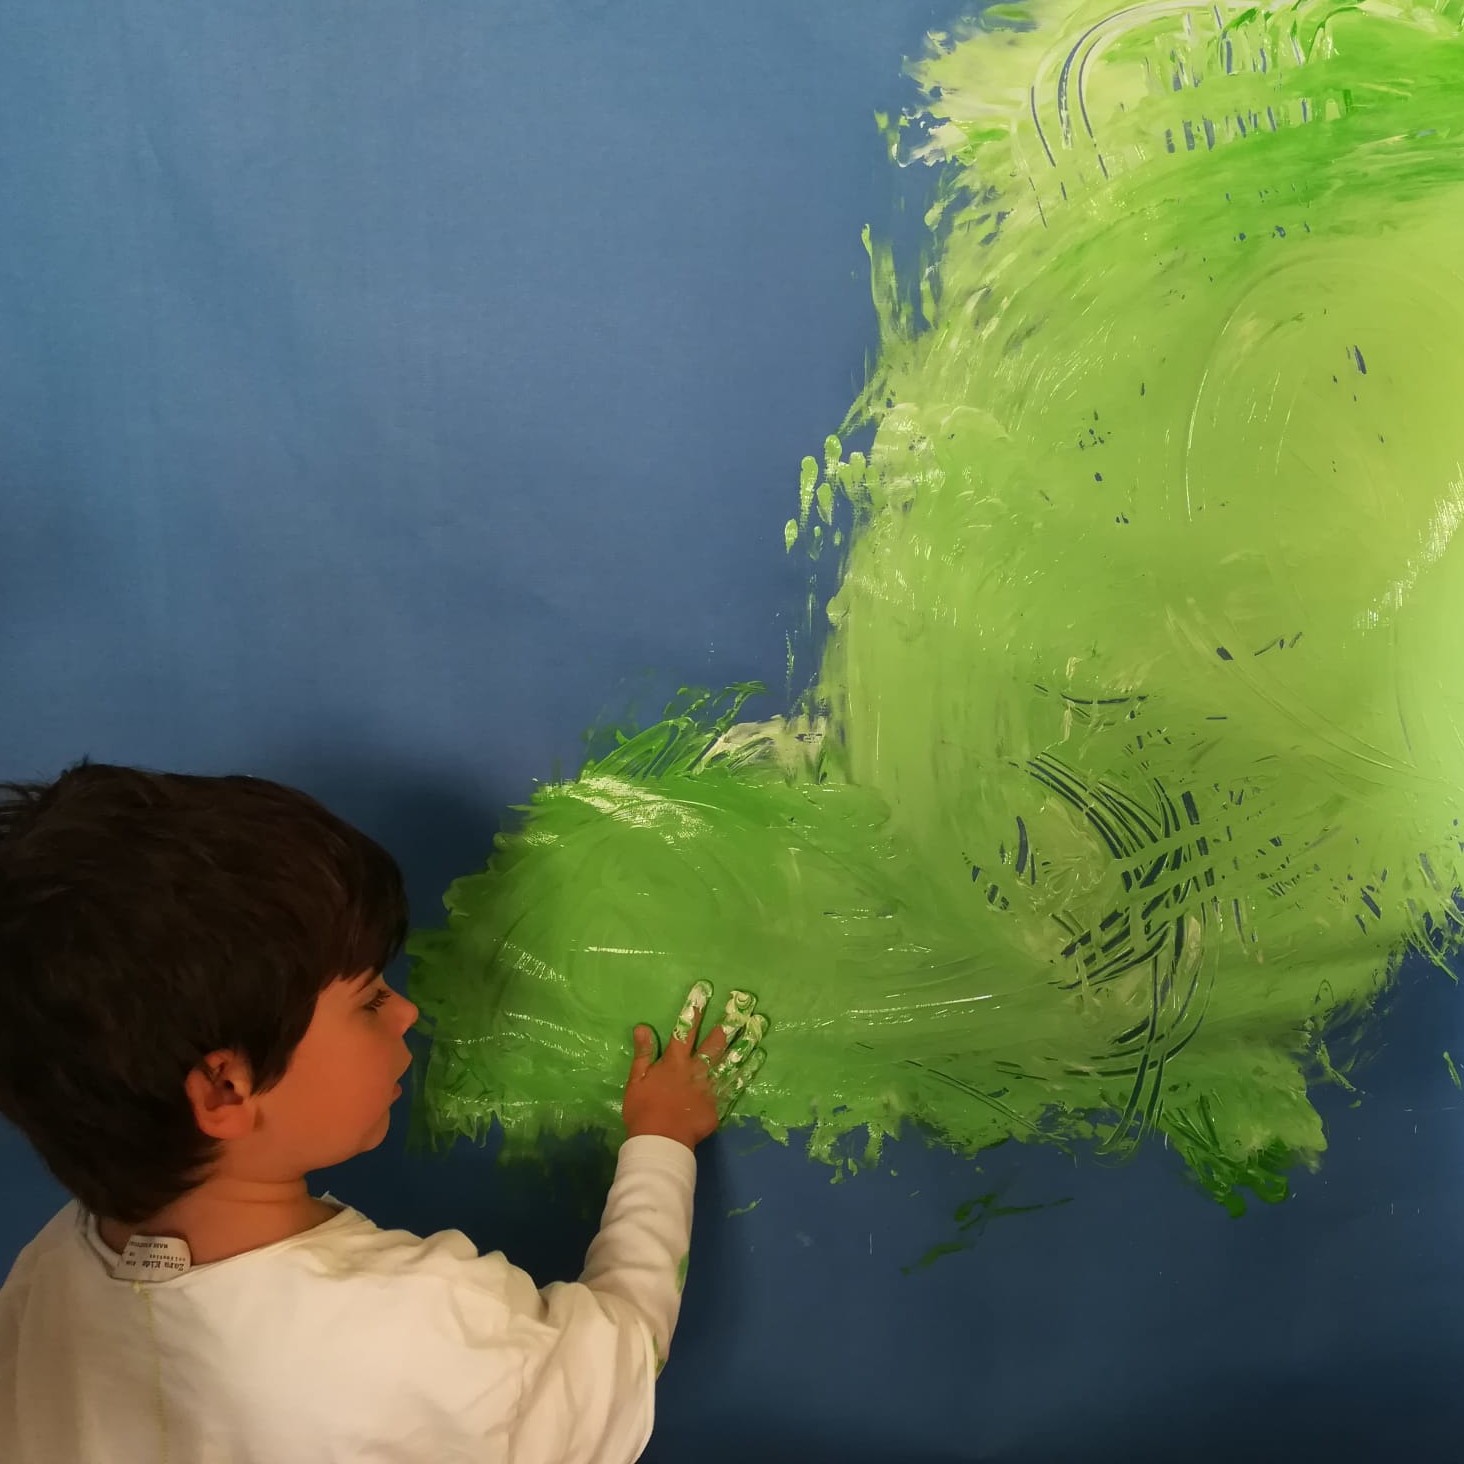 Vista posterior de un niño pintando con su manos trazos verdes sobre papel un papel azul en una Propuesta de experimentación de la obra The River.    https://cazapeonzas.com